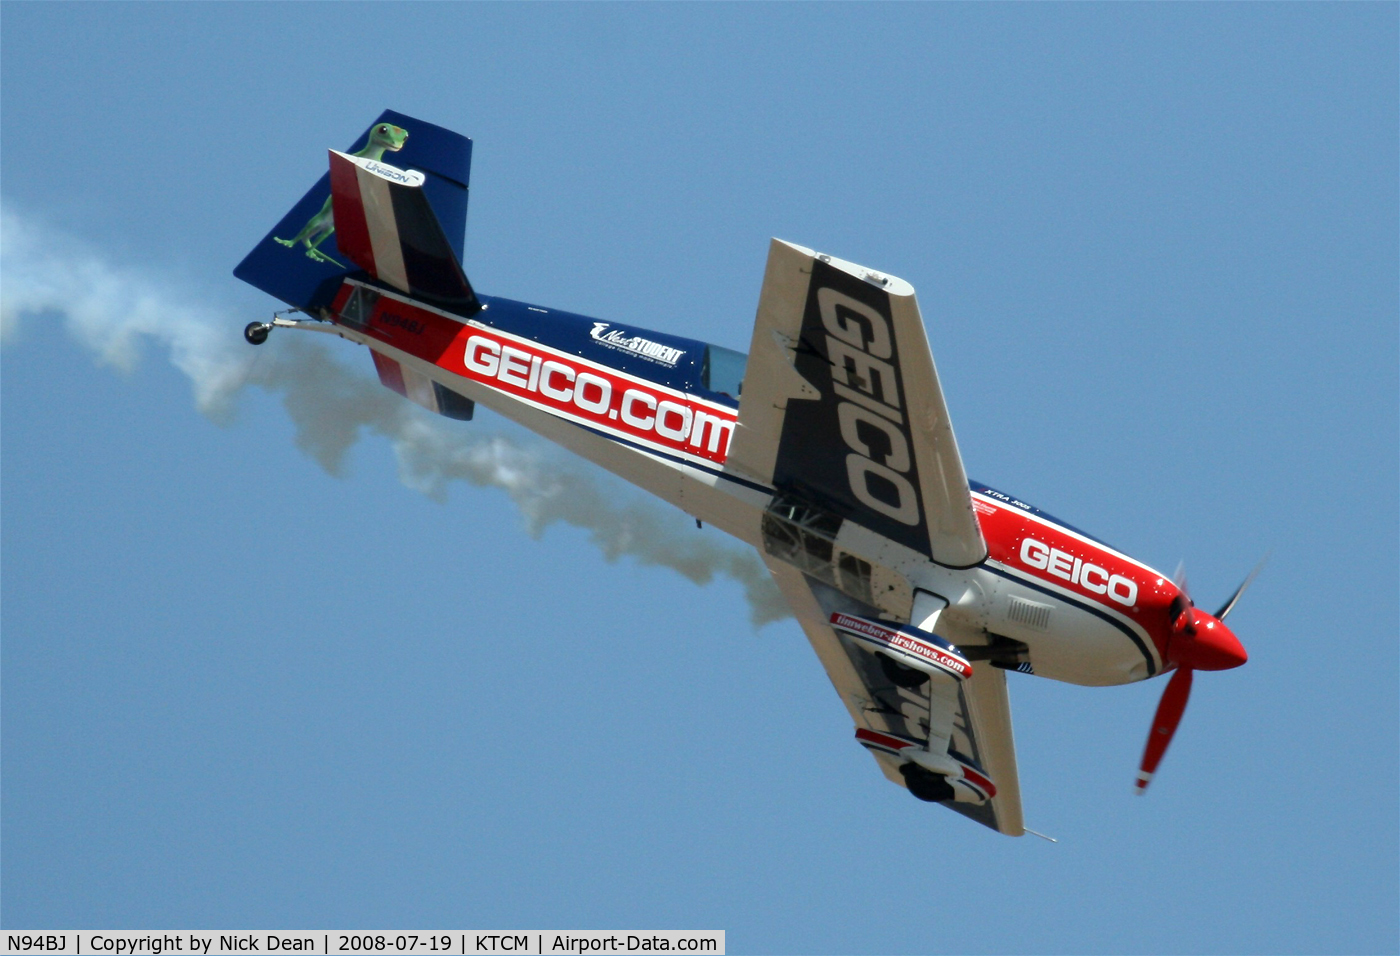 N94BJ, 2002 Extra EA-300S C/N 031, McChord Airshow